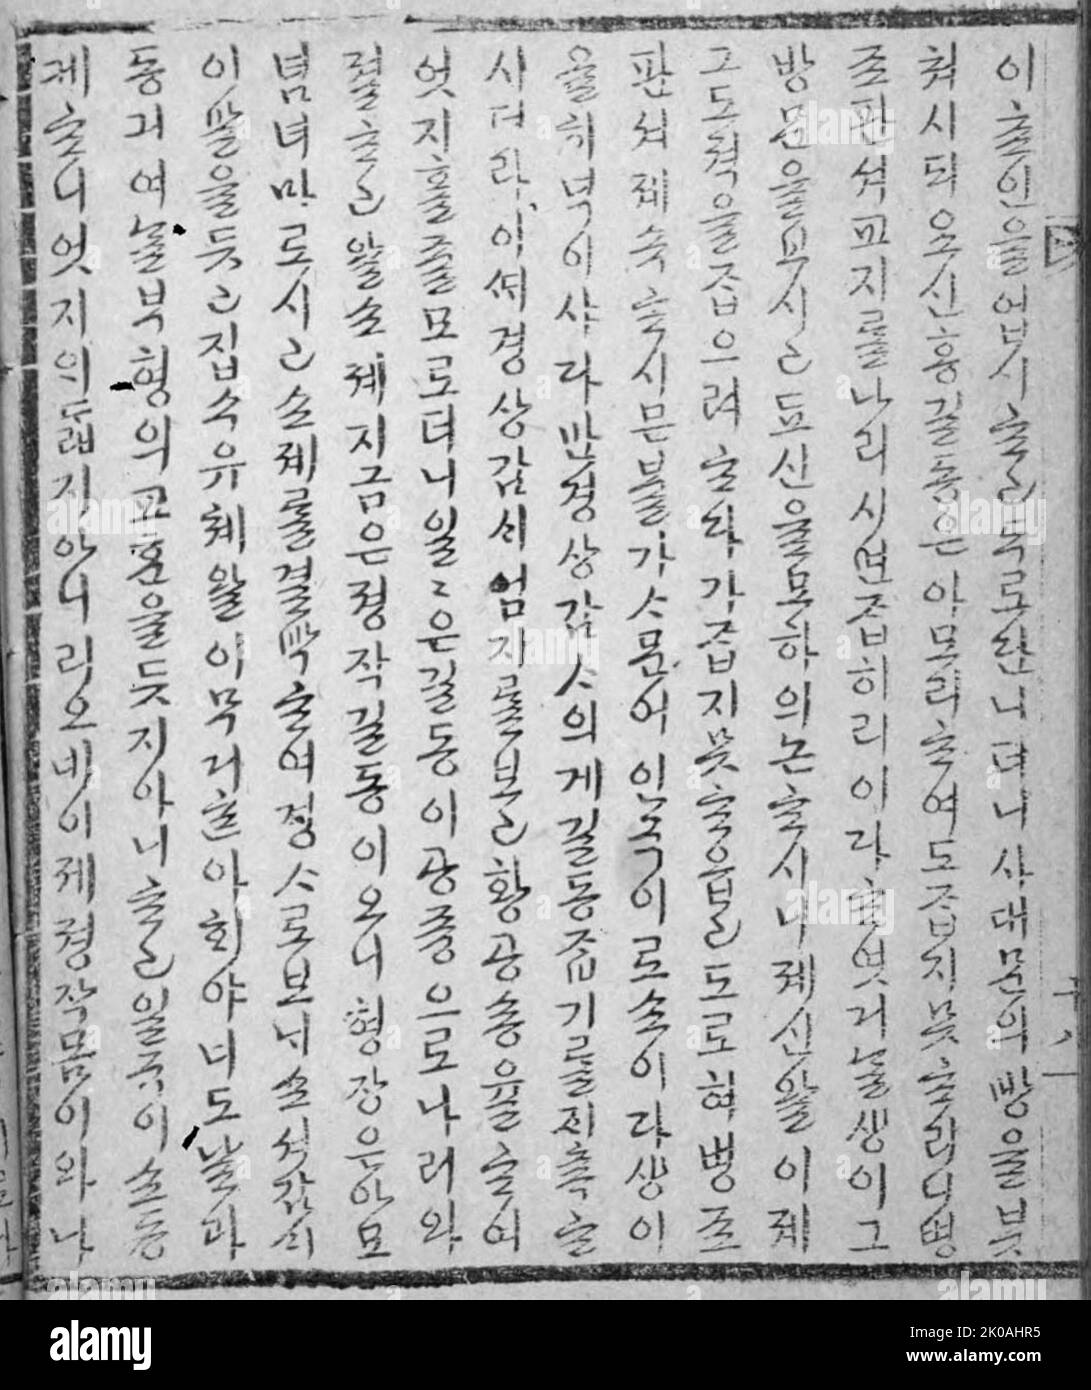 Racconto di Hong Gildong è uno dei primi romanzi scritti in Hangul, l'alfabeto coreano, nel mezzo della dinastia Joseon. Il romanzo è di Heo Gyun (ho Kyun, 1569-1618), il cui pensiero rivoluzionario si riflette nell'enfasi della storia sull'abbattimento delle differenze di stato e sulla riforma della politica corrotta. Il personaggio principale del romanzo, Hong Gildong, era il figlio di un nobile e di una serva femminile. Anche se era molto intelligente e di talento, Hong Gildong non fu mai accettato come figlio di una nobile famiglia a causa di un rigido sistema di status. Dopo aver lasciato casa, Hong Gildong divenne un bandito Foto Stock